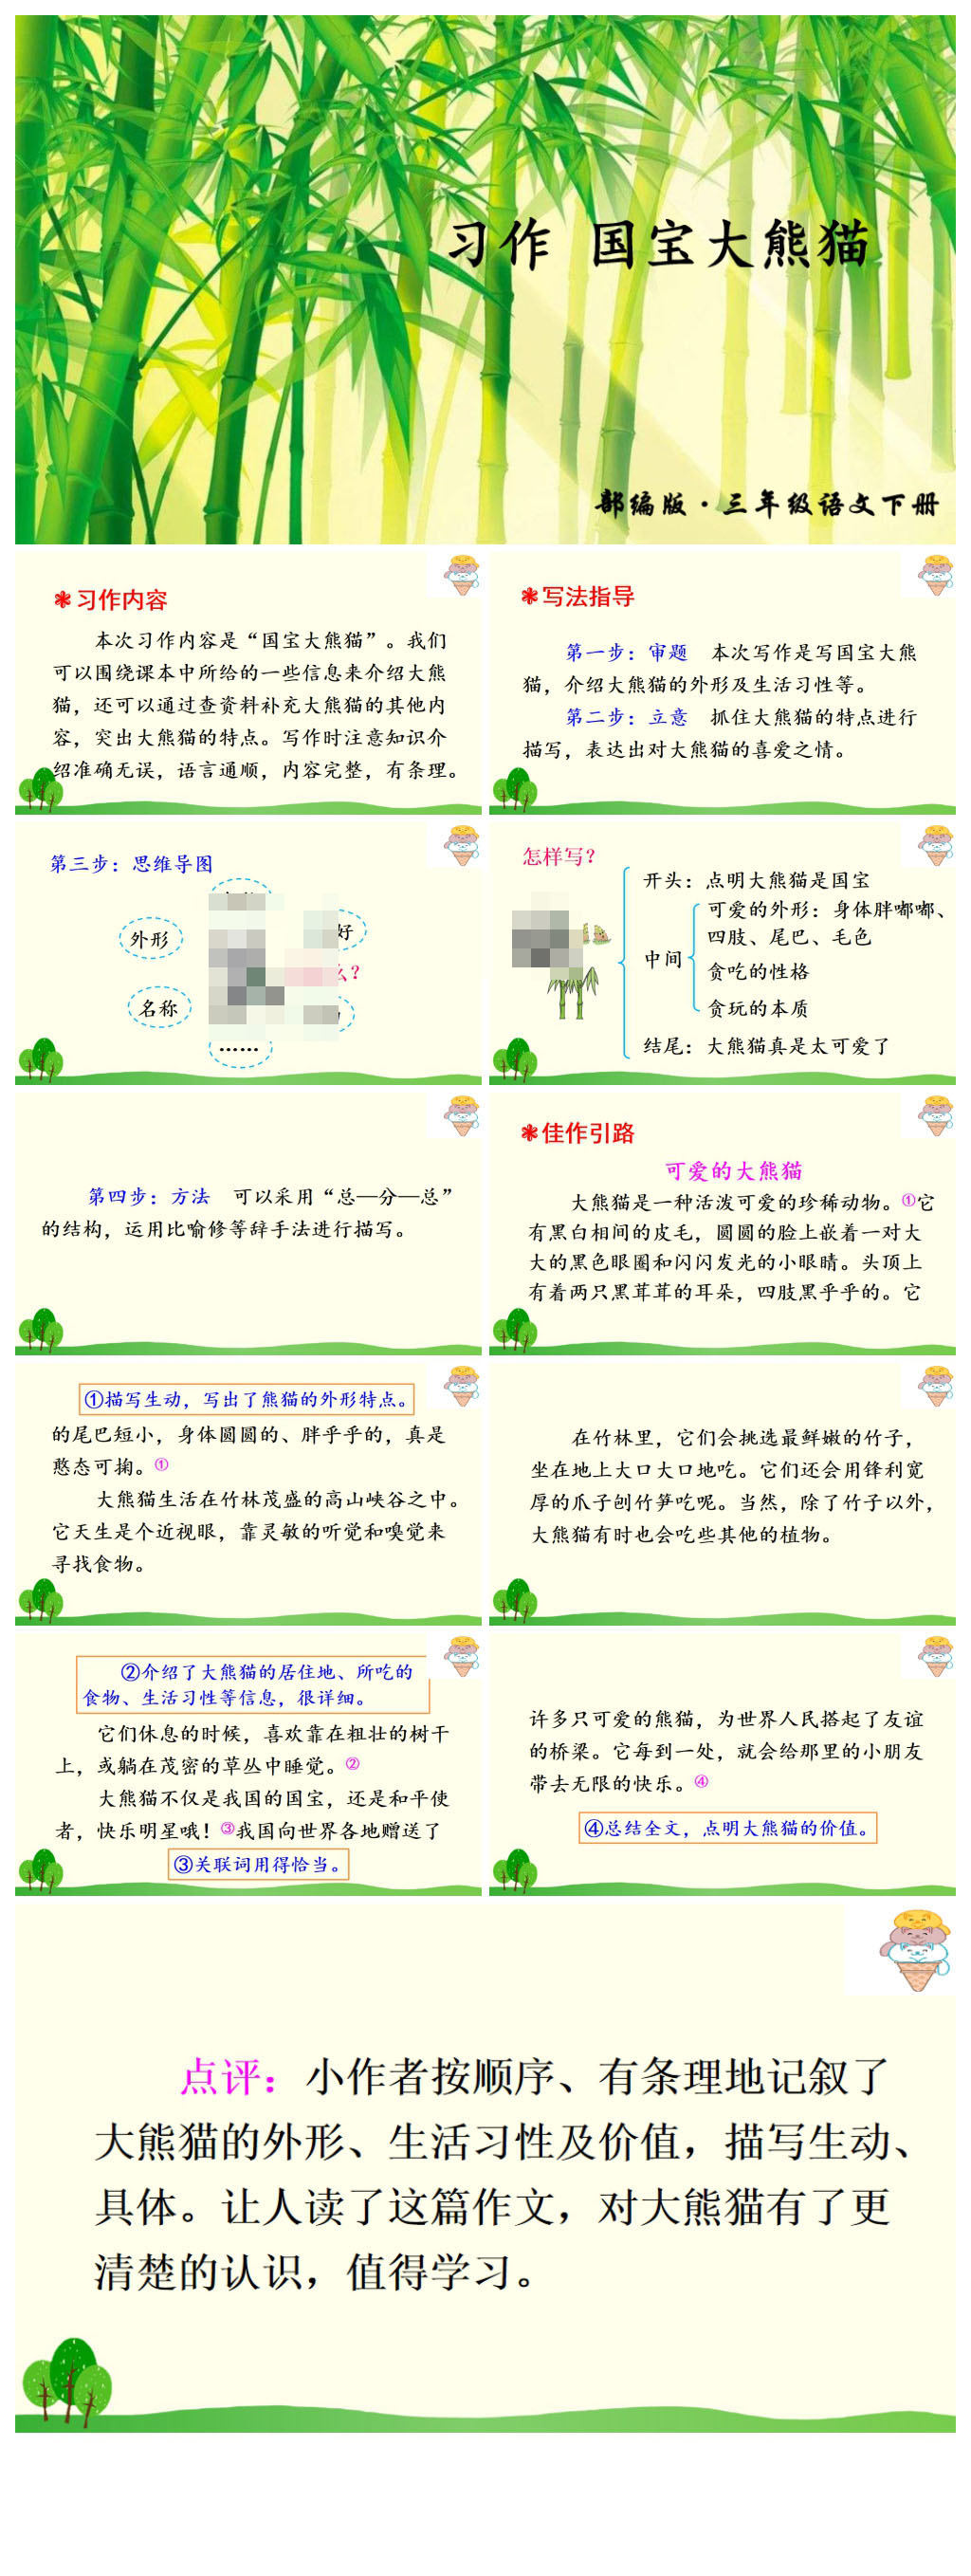 国宝大熊猫ppt模板 企业ppt素材下载 众图网